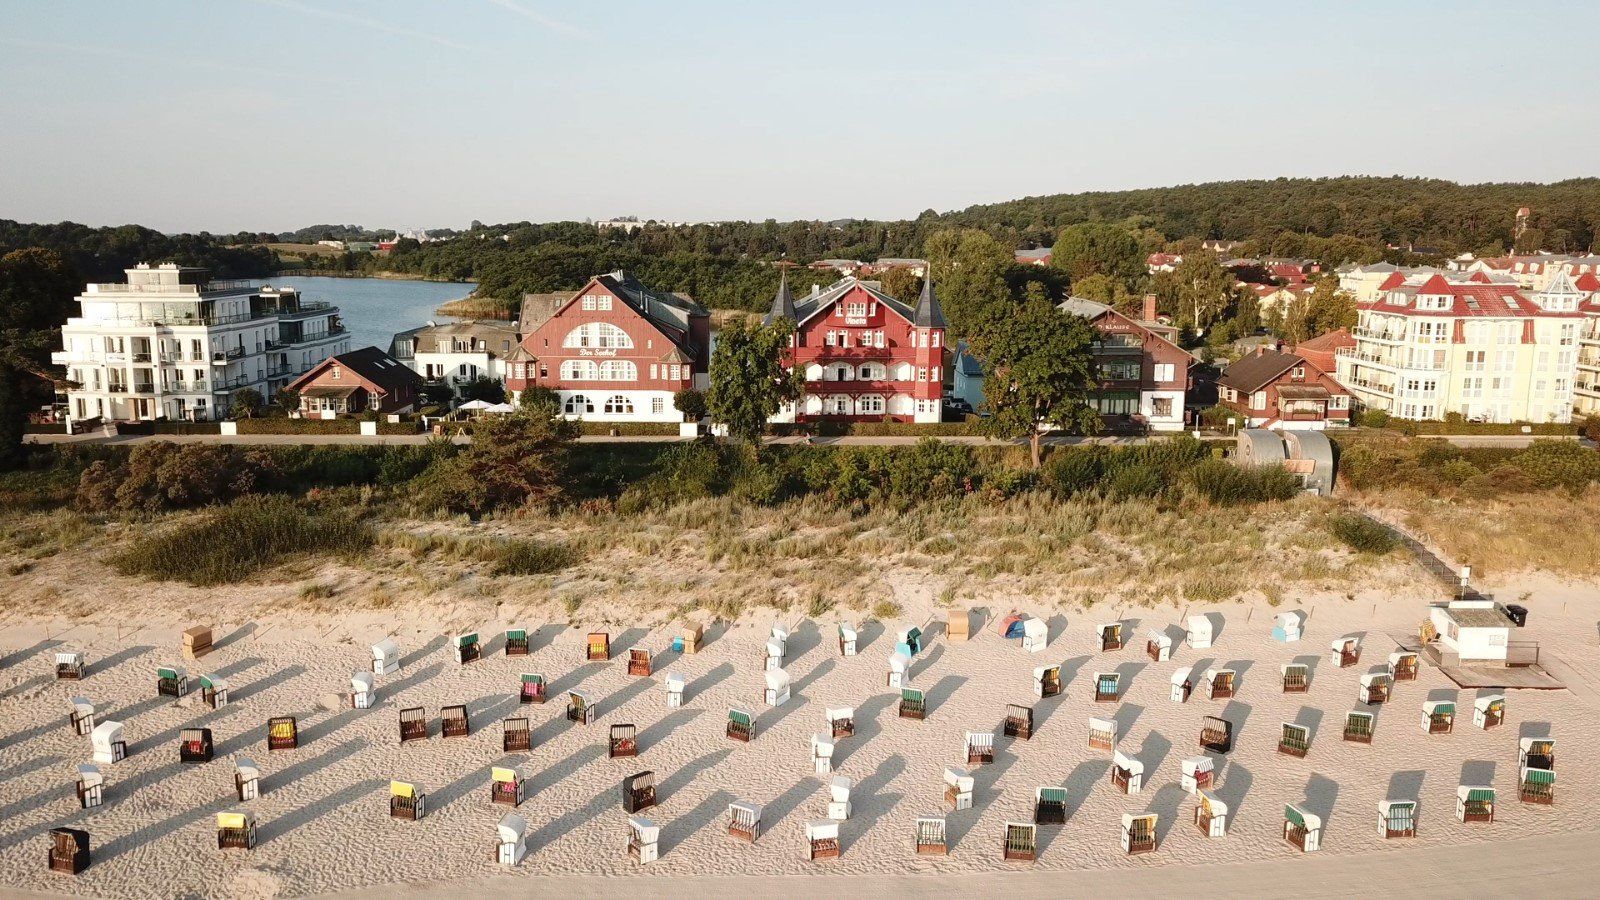 Die Villa Vineta mit Meerblick liegt direkt am Strand von Bansin auf der Insel Usedom. Traumhafter Urlaub in der Ferienwohnung einer historischen Villa. Ausstattung mit WLAN inklusive. Direkter Meerblick.